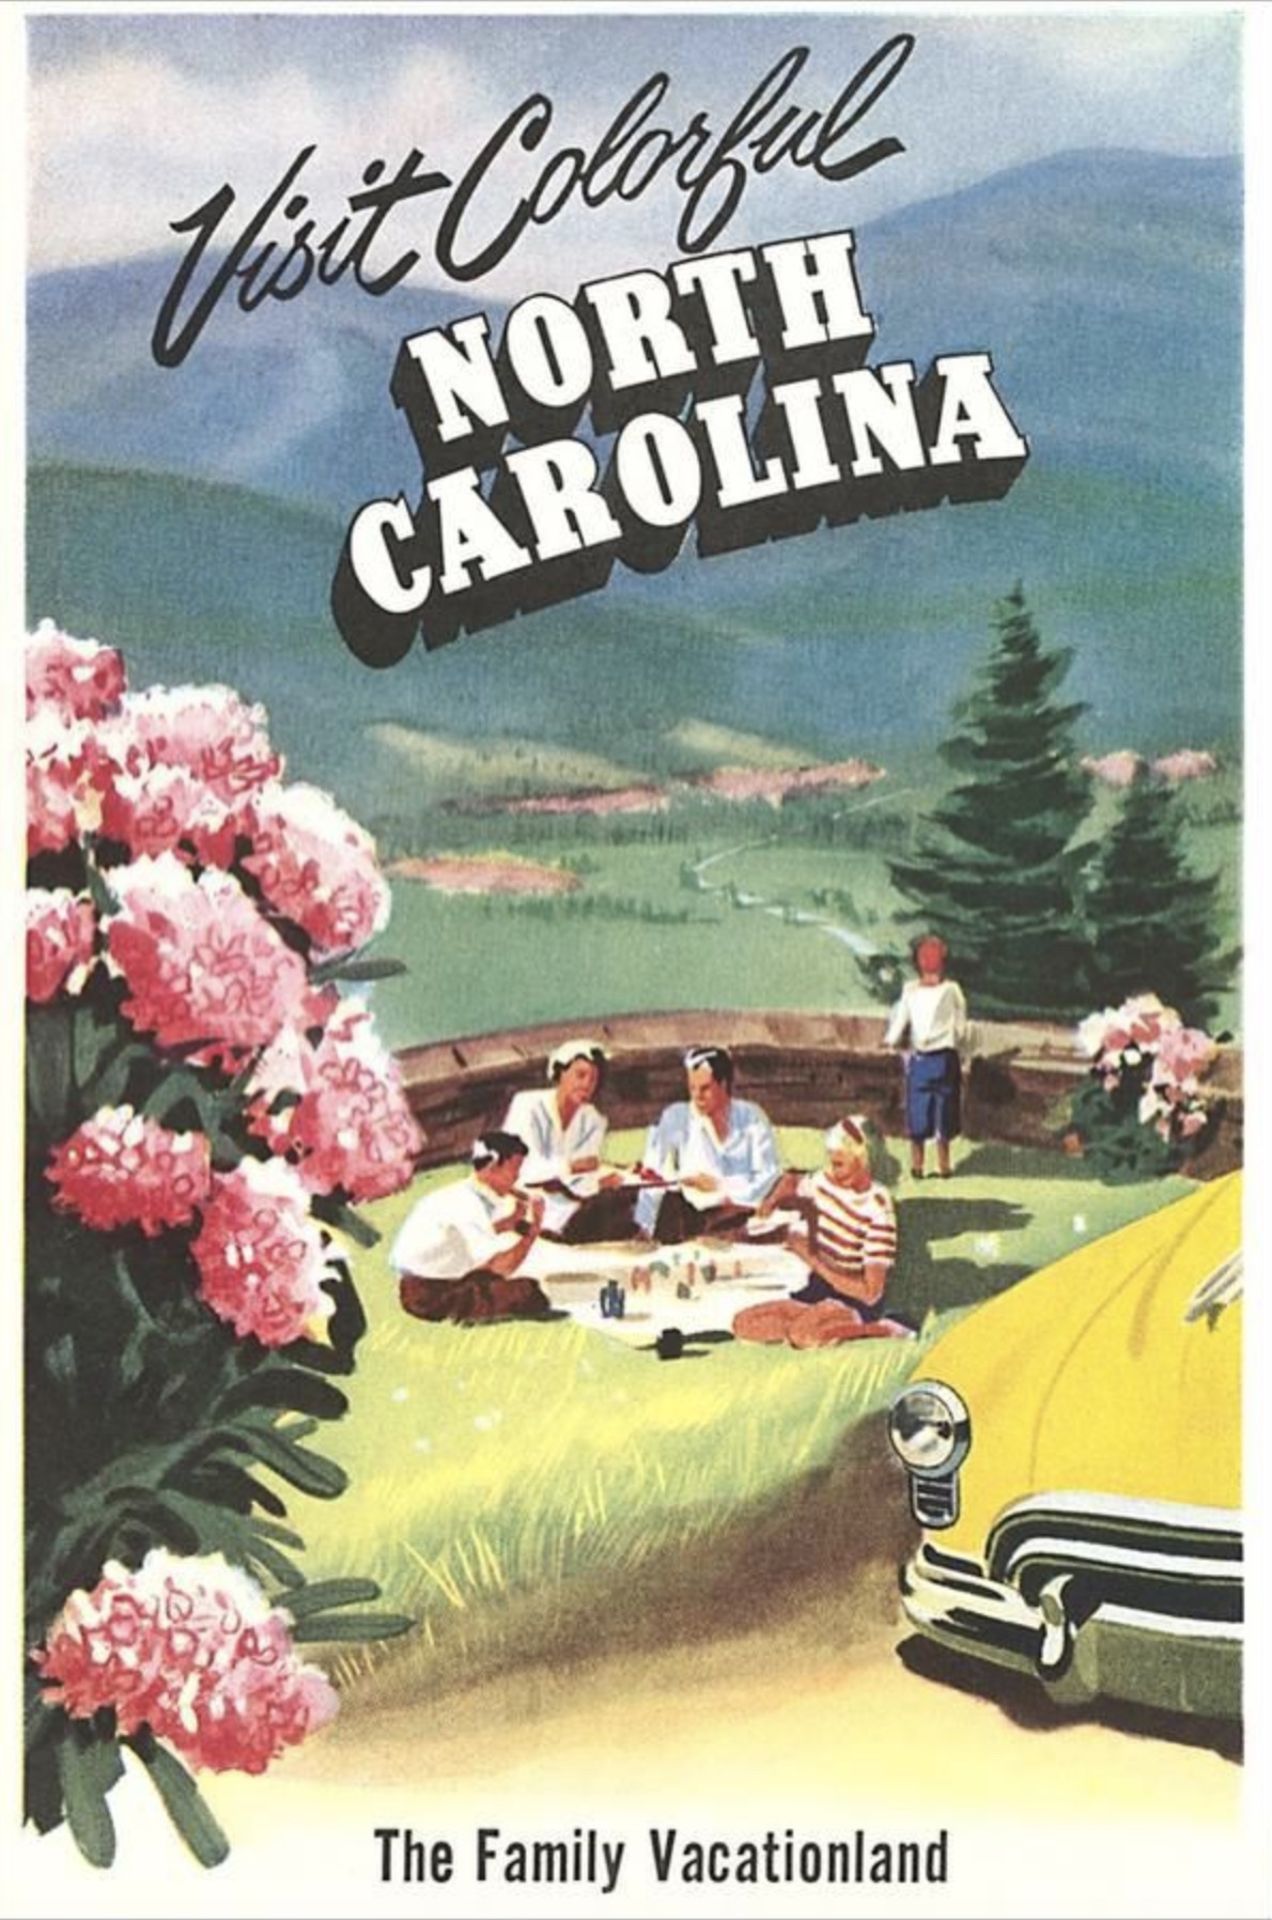 "Visit Colorful North Carolina, The Family Vacationland" Canvas Print